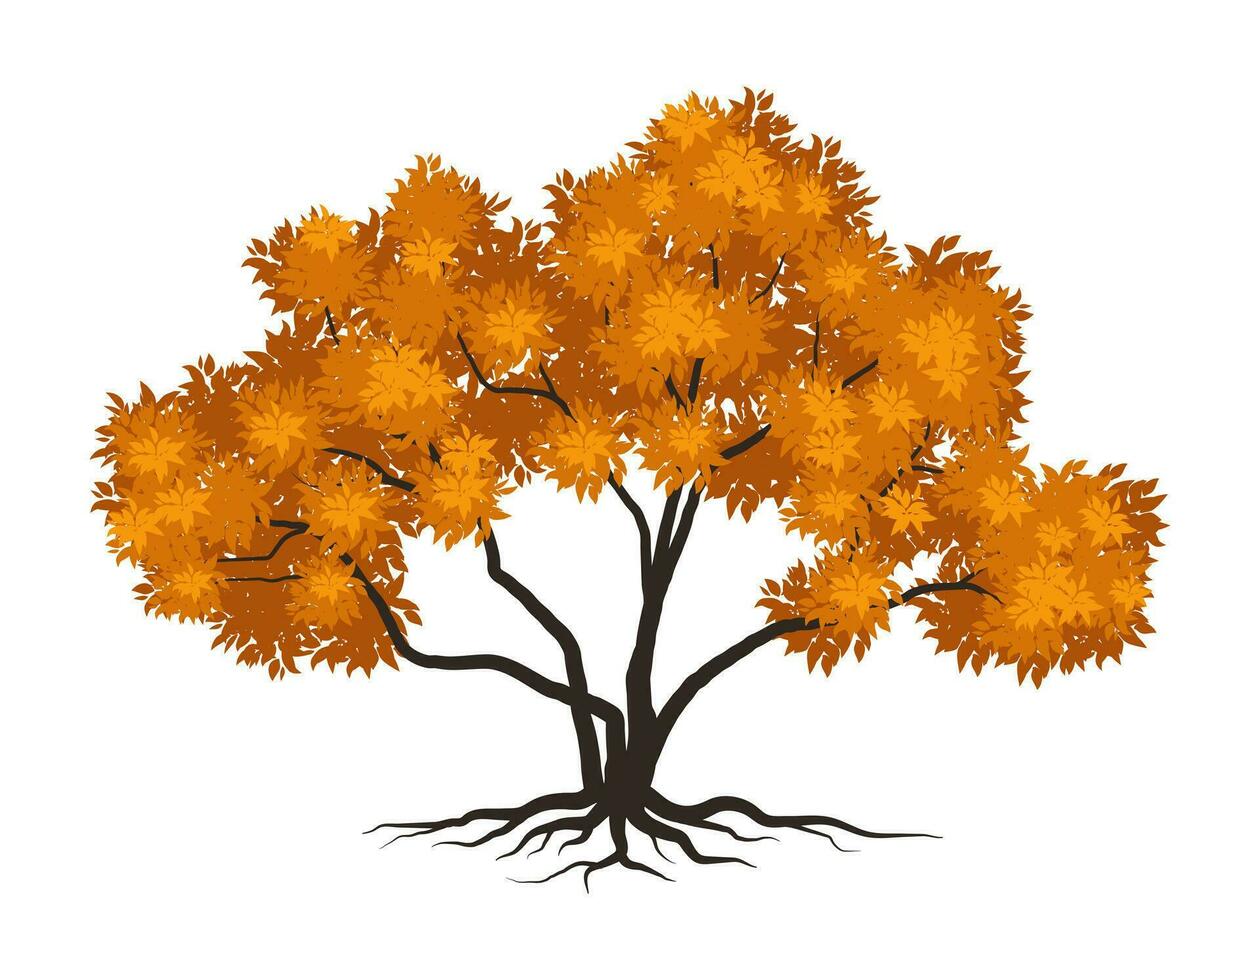 Herbst Baum Symbol style.can Sein benutzt zum Ihre Arbeit.Willkommen Herbst Jahreszeit Konzept. vektor